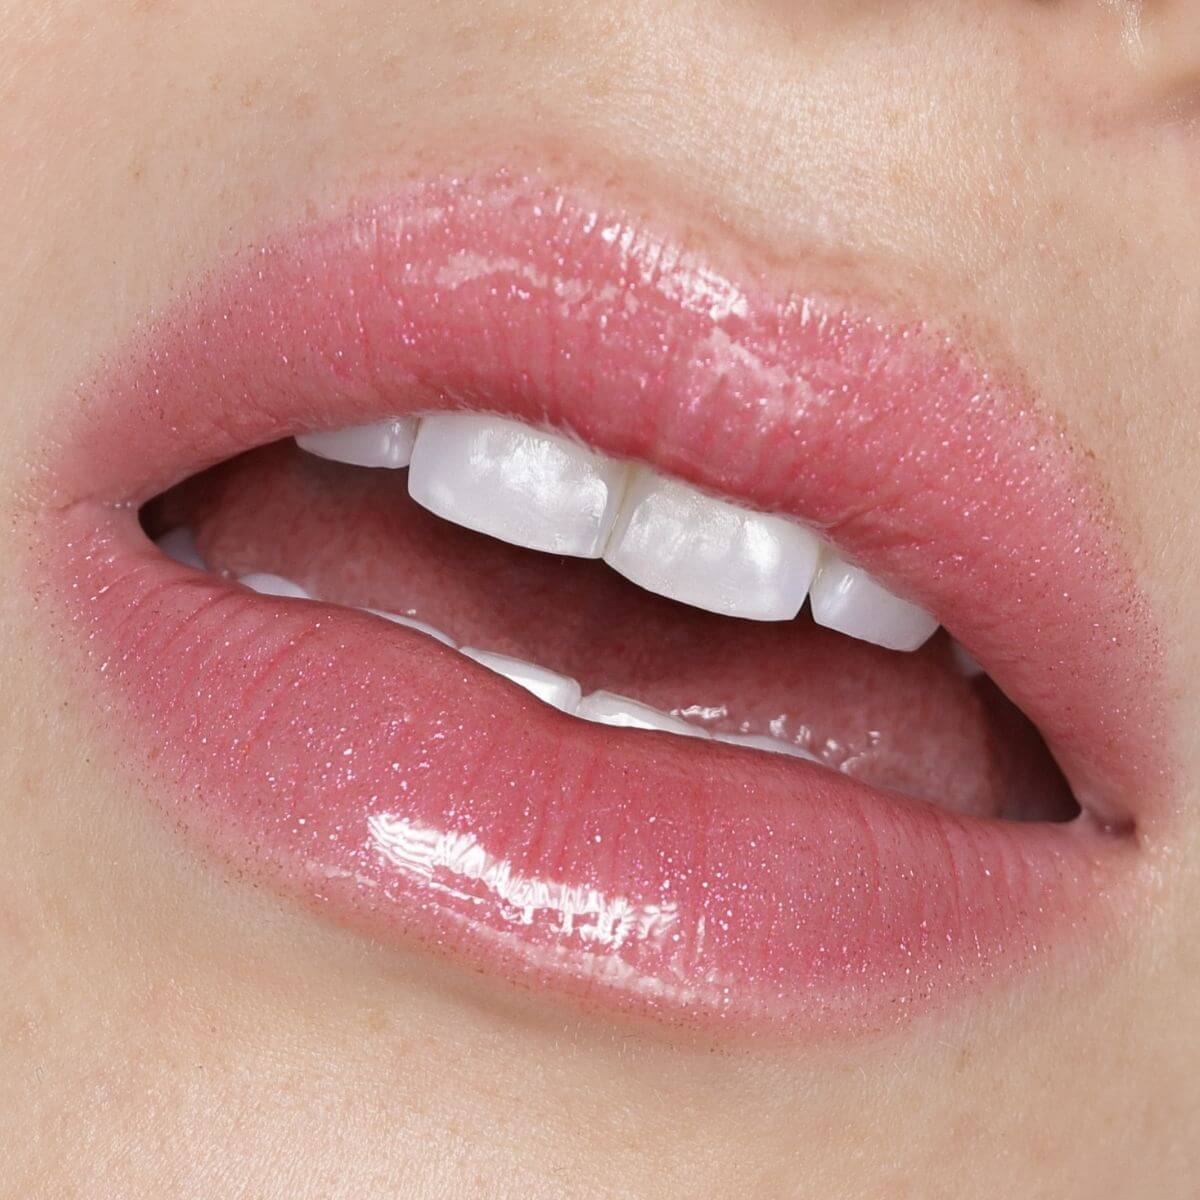 Plumping Lip Gloss (Pink Pout)